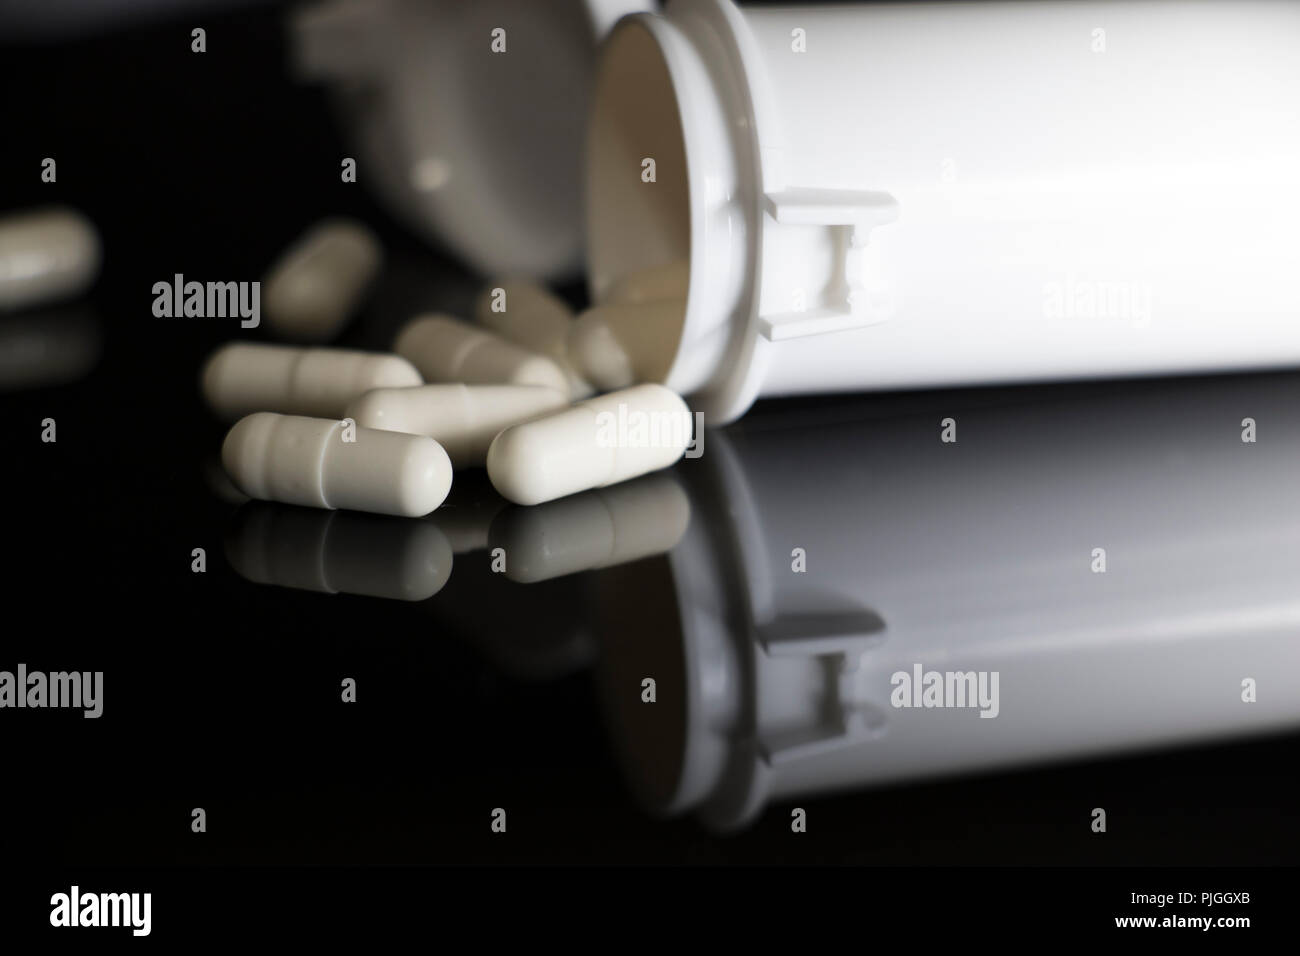 Weiße Pillen fallen um eine offene Pille Container auf einem schwarzen, glänzenden Oberfläche. Geöffnete Flasche verschreibungspflichtige Pillen mit Medizin fallen von oben. Stockfoto